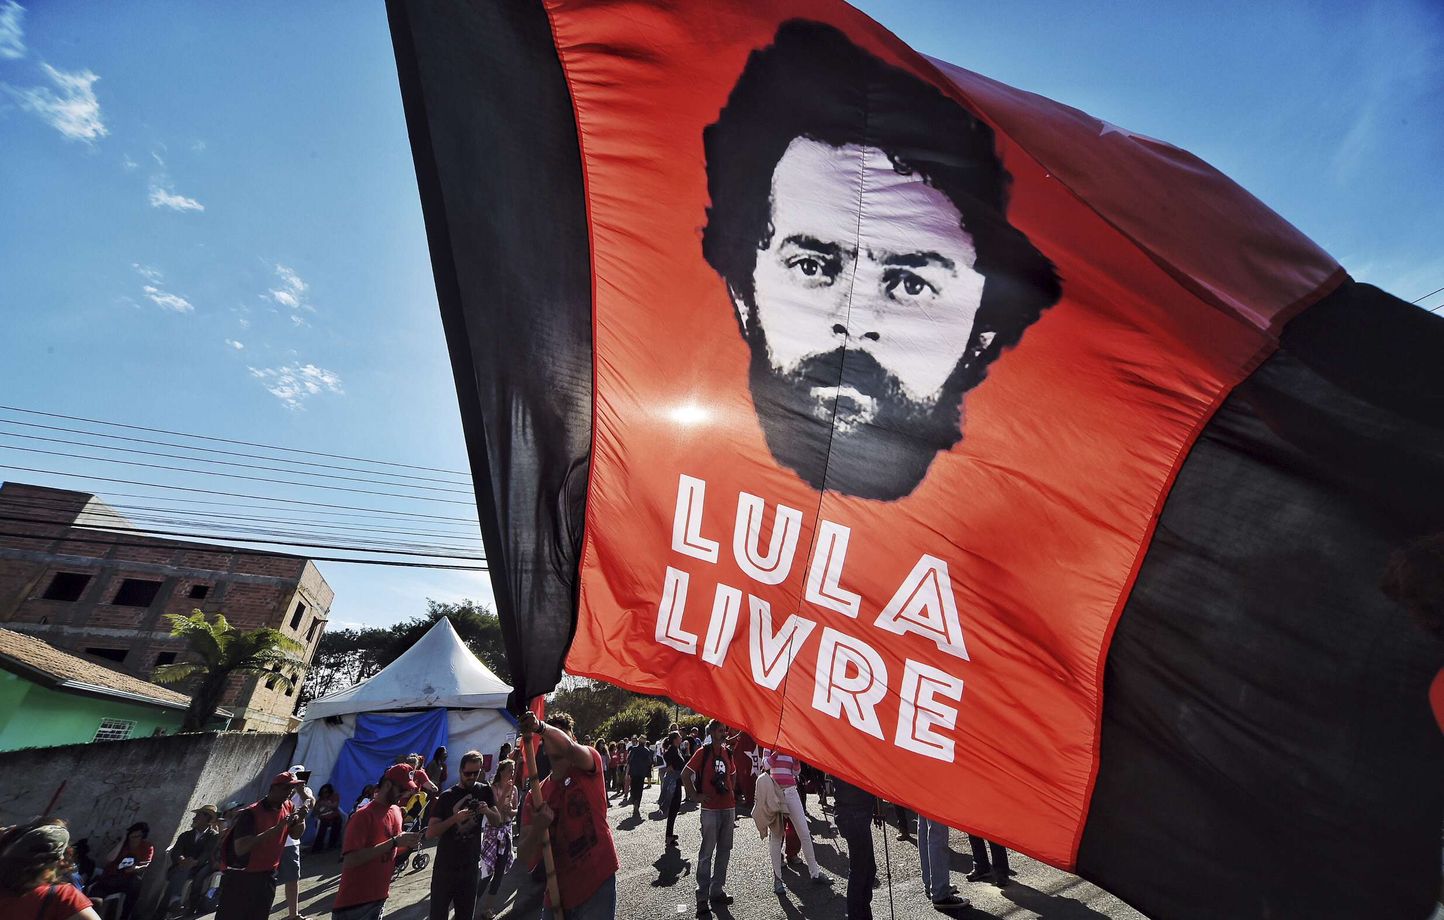 Des supporters de l'ancien président brésilien Lula, emprisonné pour corruption, réclament sa libération, le 8 juillet 2018.